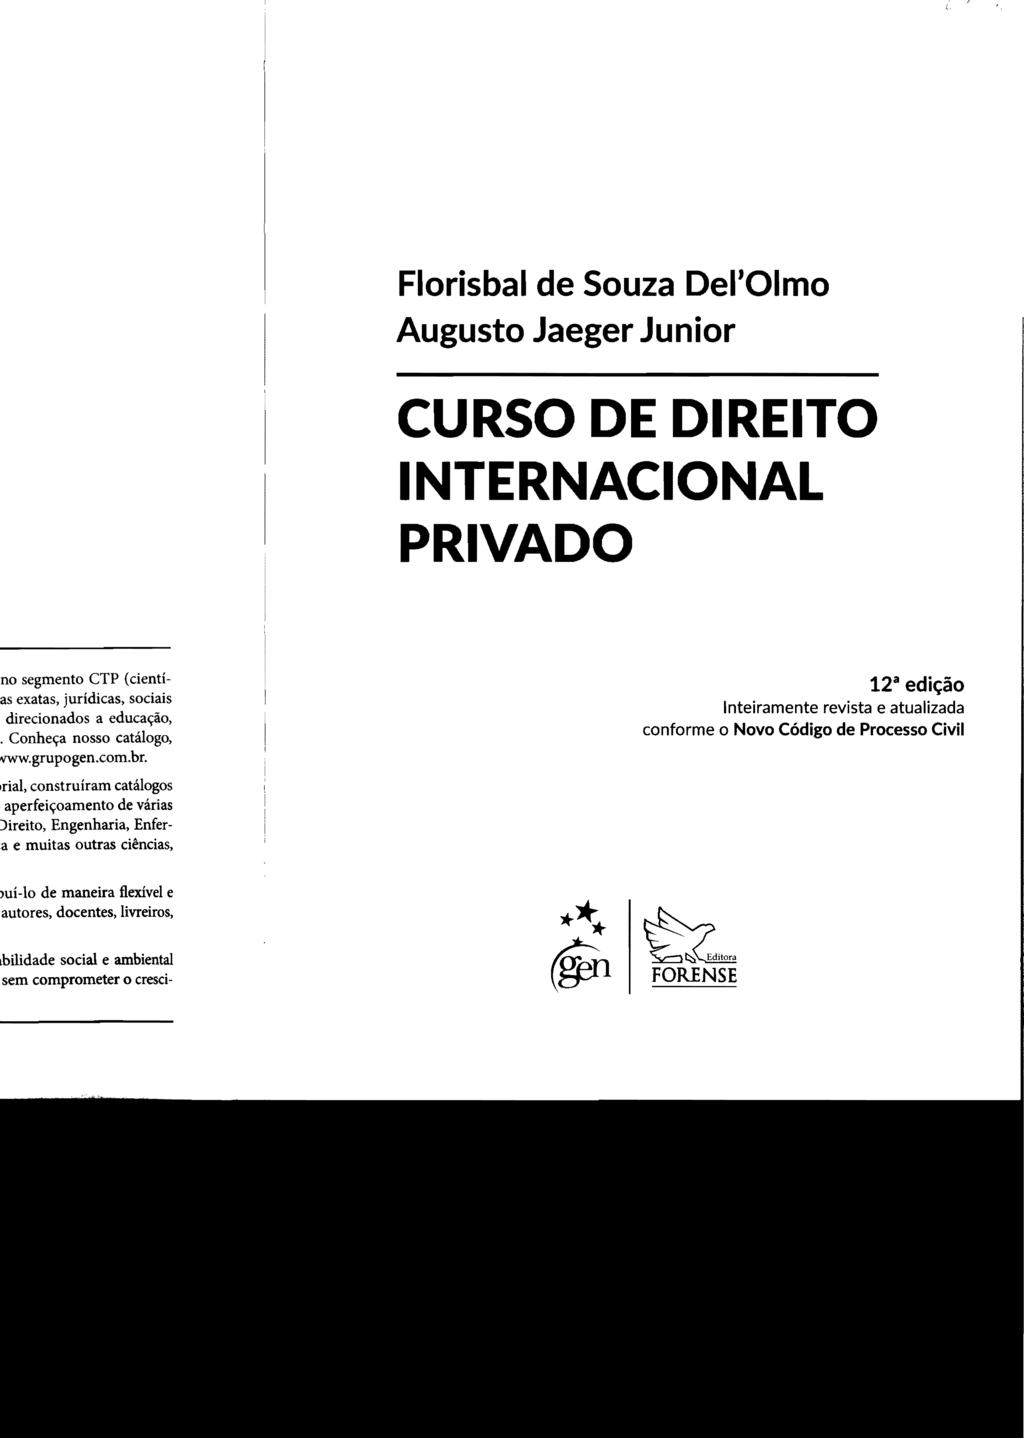 Florisbal de Souza Del'Olmo Augusto Jaeger Junior CURSO DE DIREITO INTERNACIONAL PRIVADO 12 3